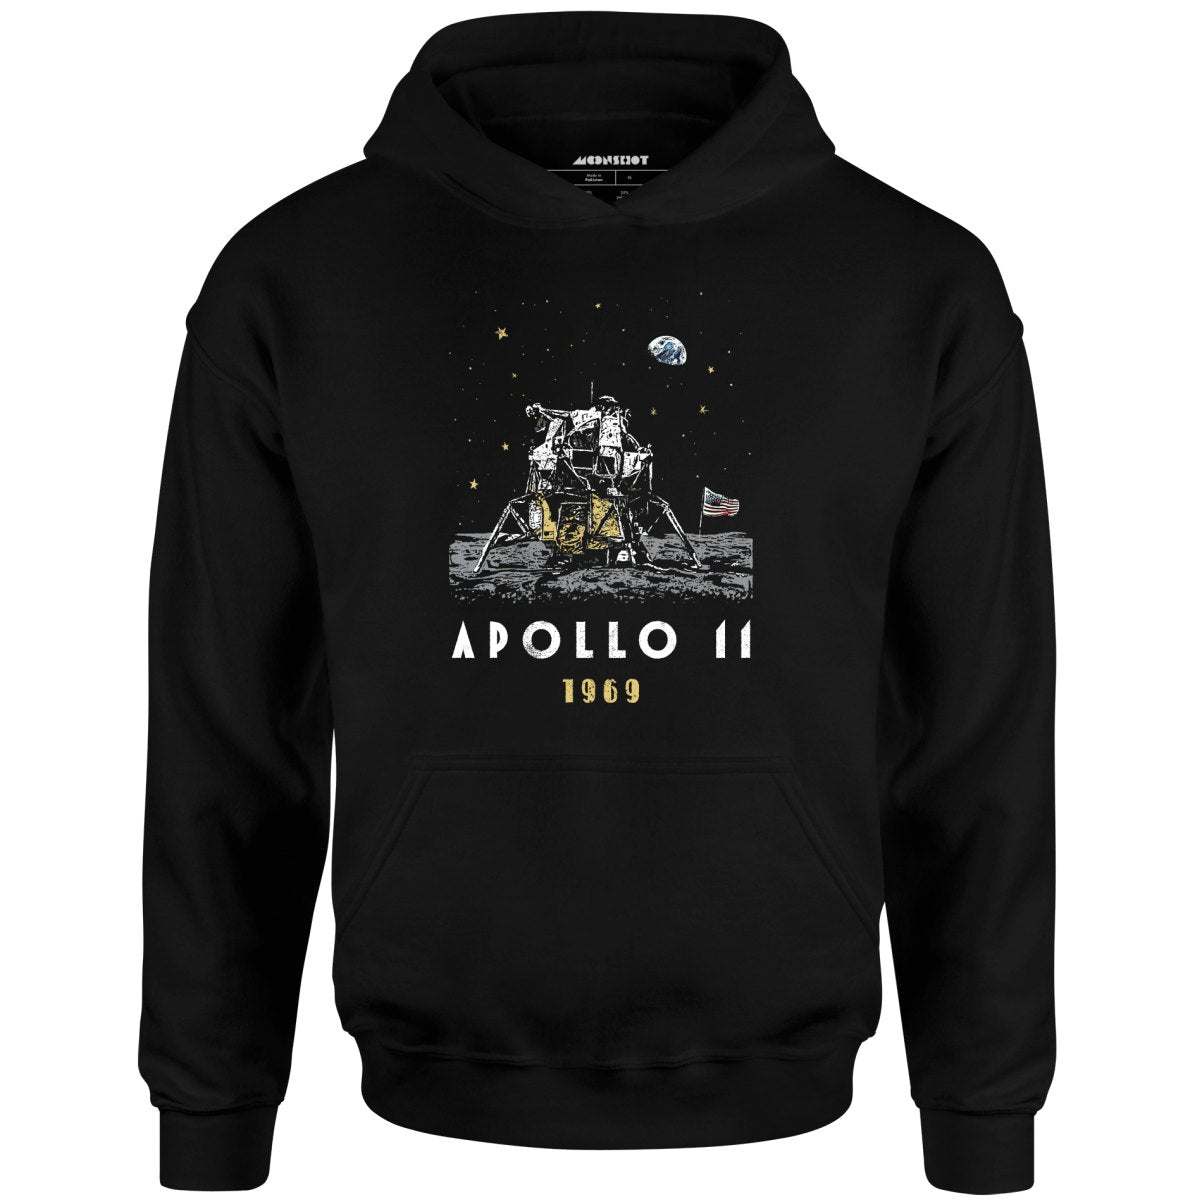 Apollo 11 - Unisex Hoodie